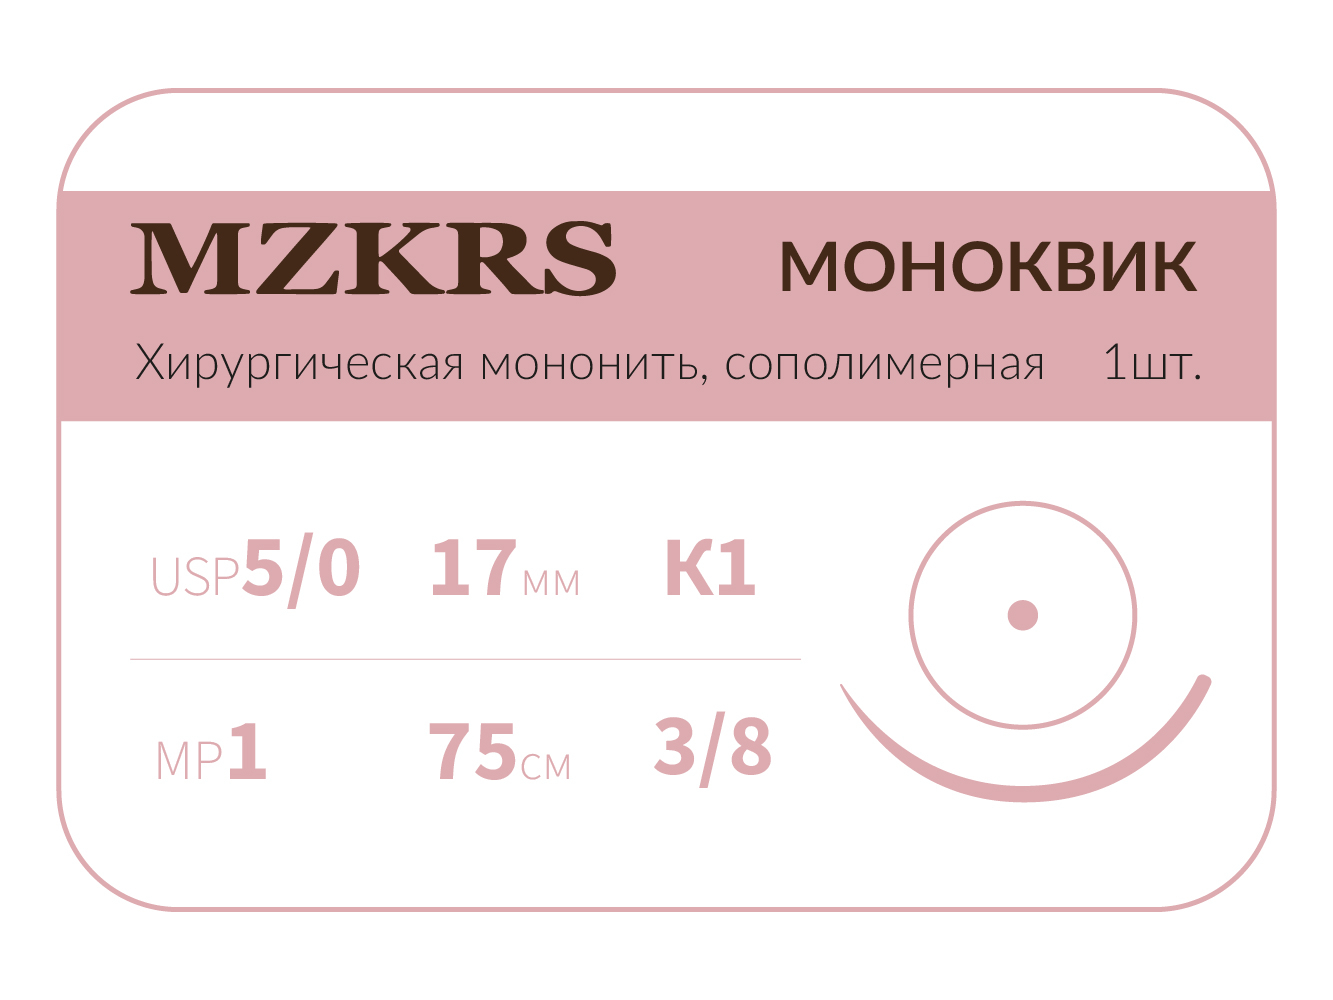 1738К1 Premium-5/0 (1)75 МОНК МОНОКВИК хирургическая мононить, сополимерная, MZKRS (Россия)